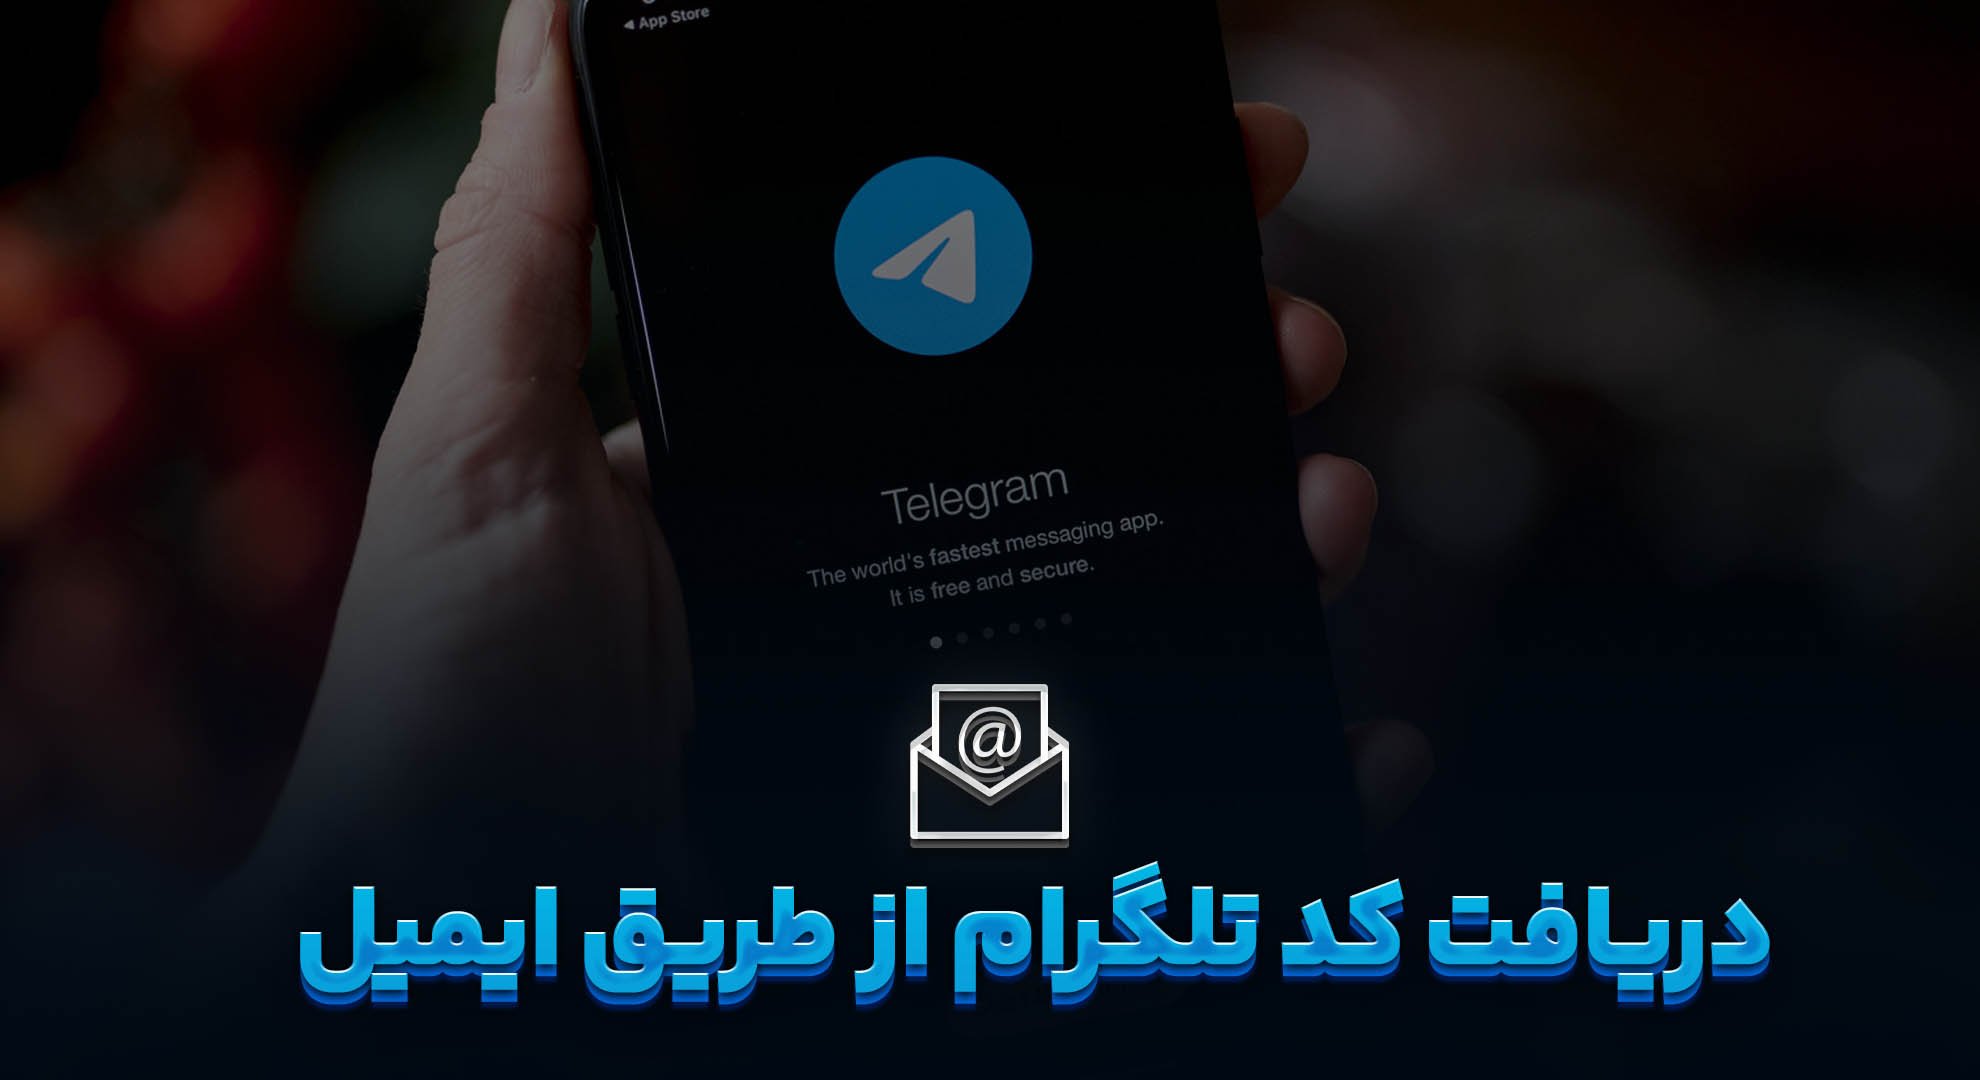 دریافت کد تلگرام از طریق ایمیل